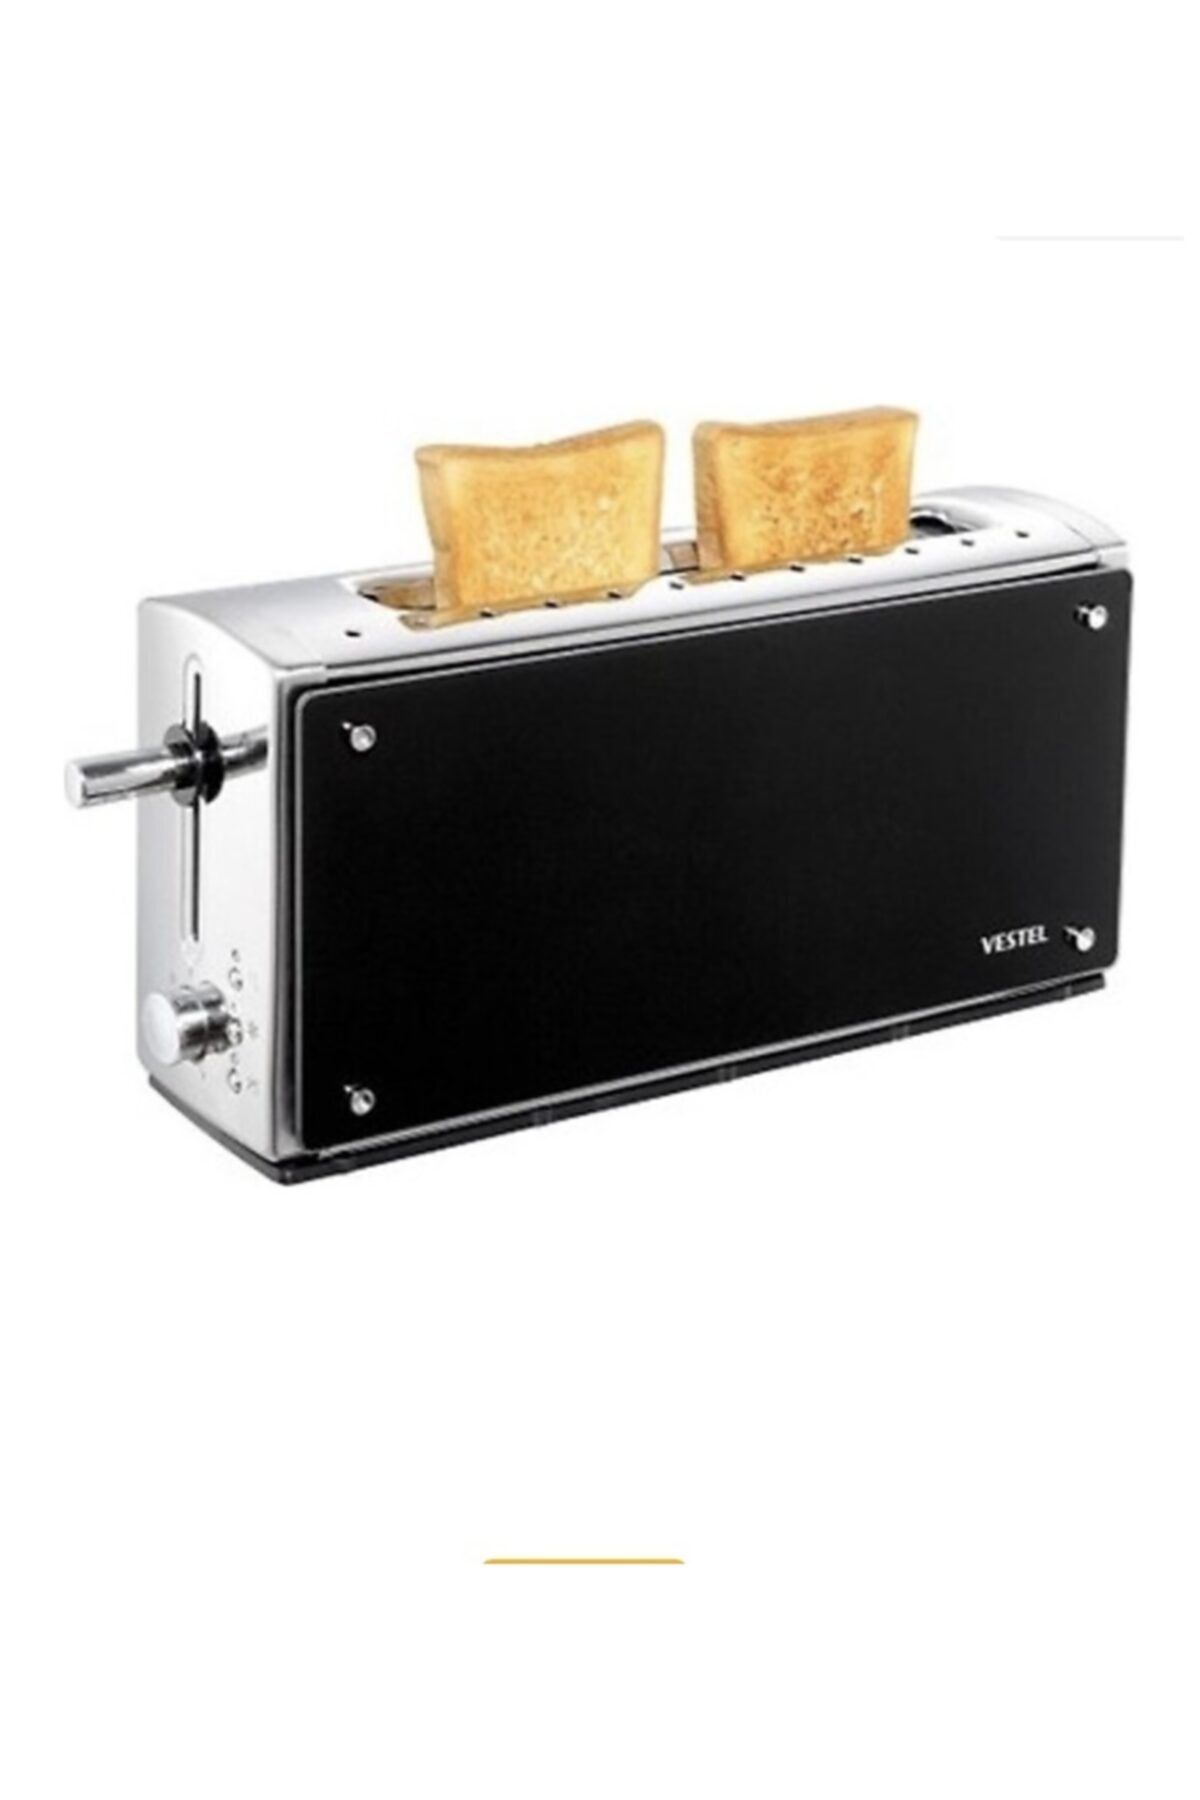 VESTEL V Brunch Ekmek Kızartma Makinası